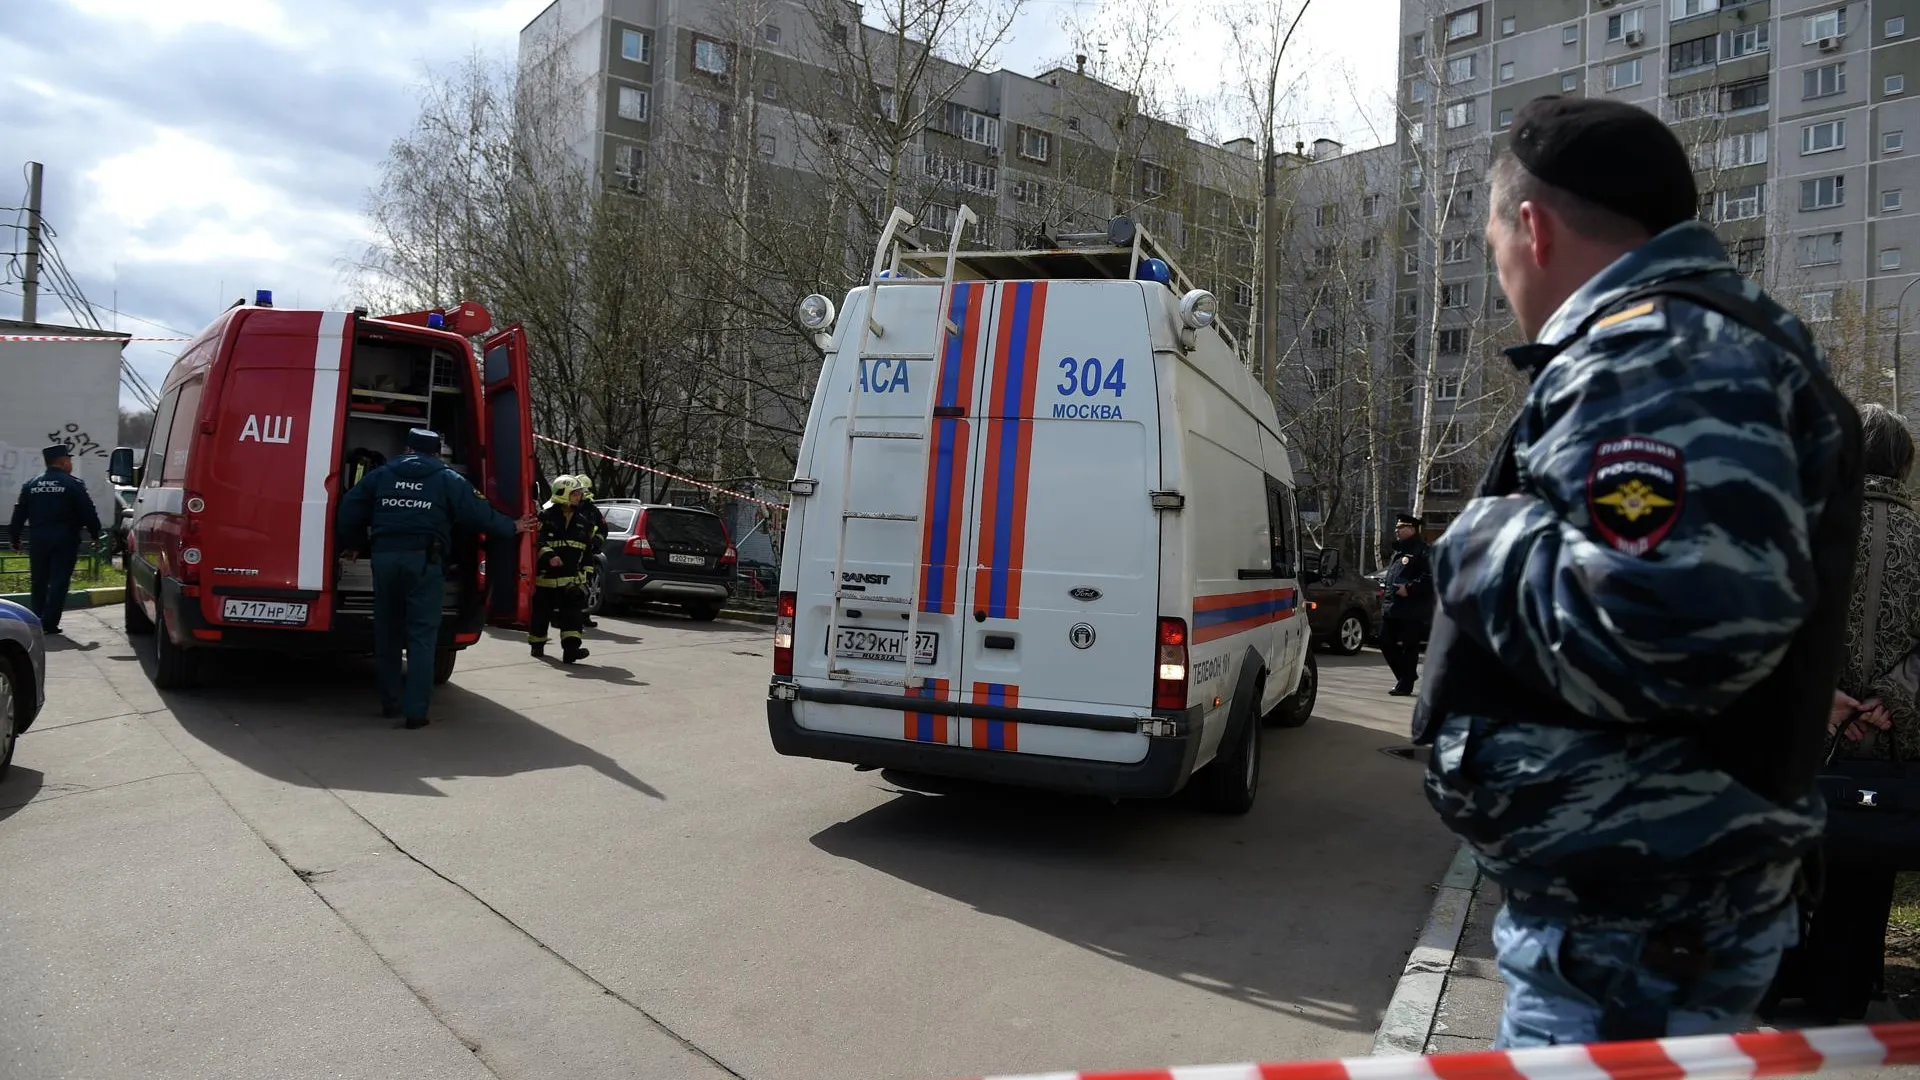 Очевидцы сообщают об эвакуации из дома в Москве, где нашли якобы взрывное устройство